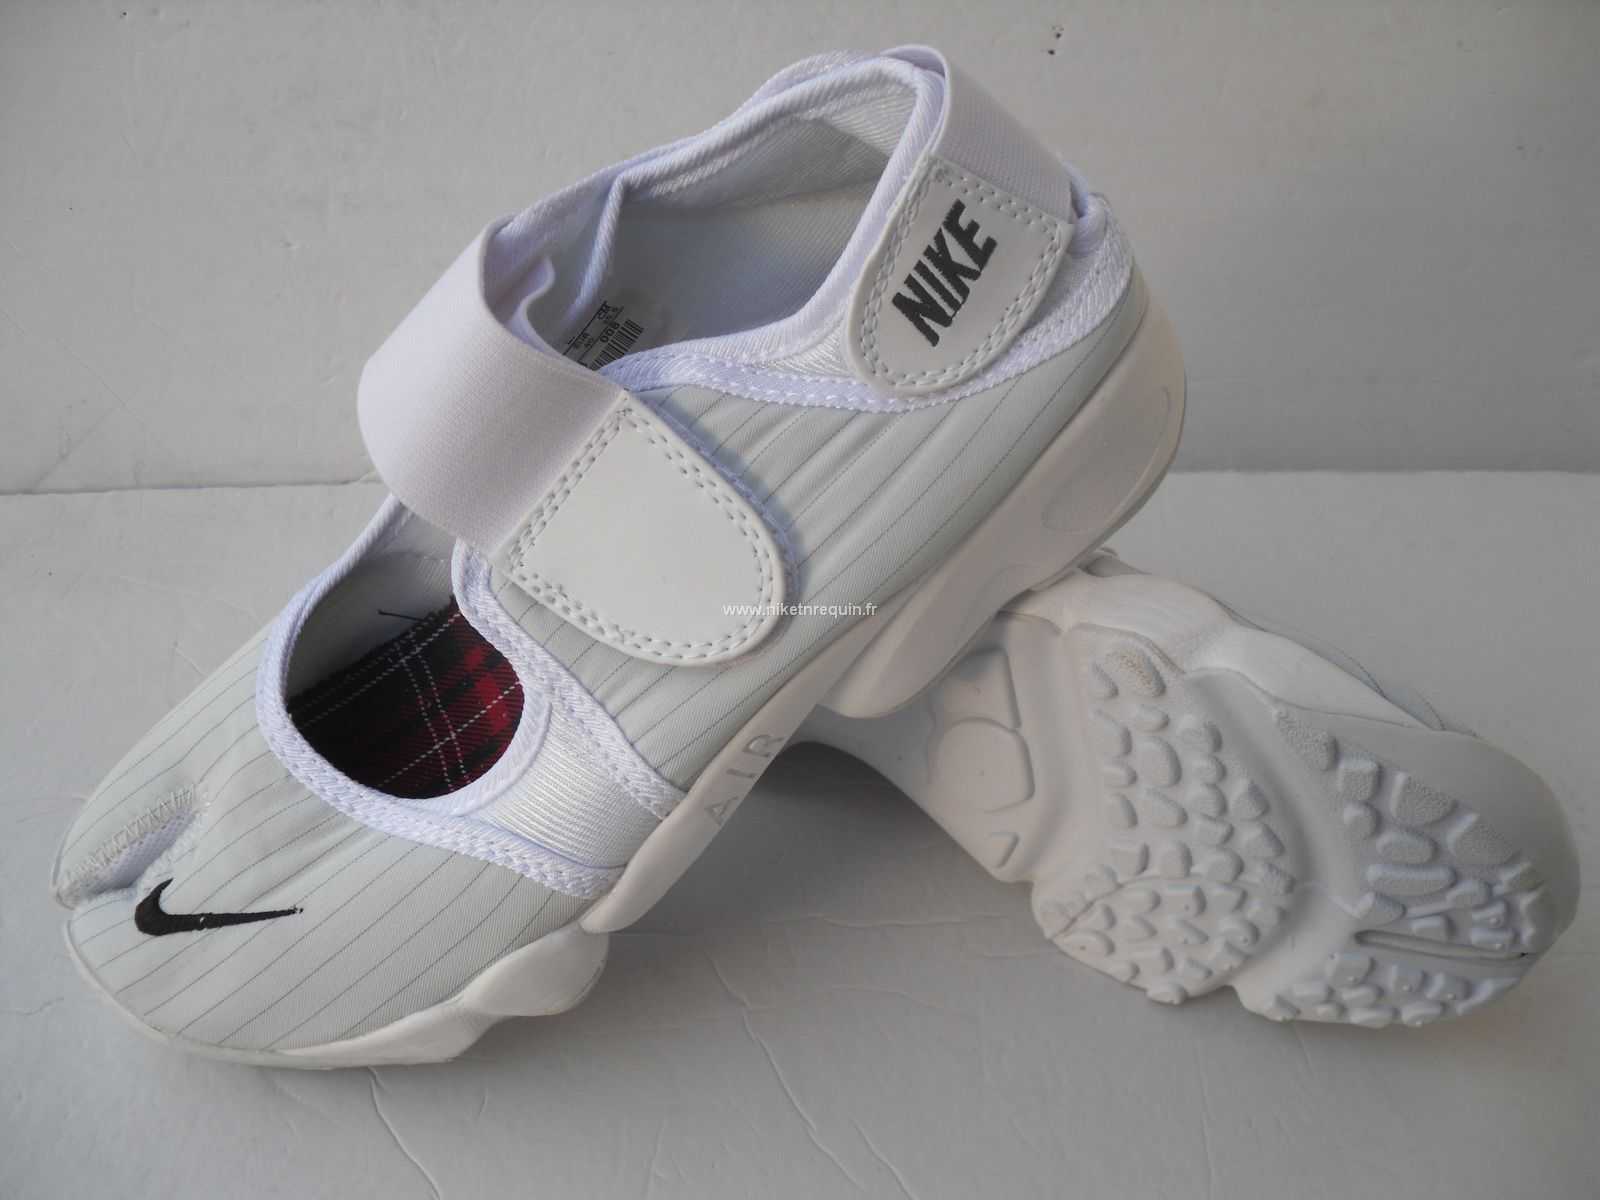 Nouveau Modele De Chaussures Nike Rift Savoureuse Shox Blanche